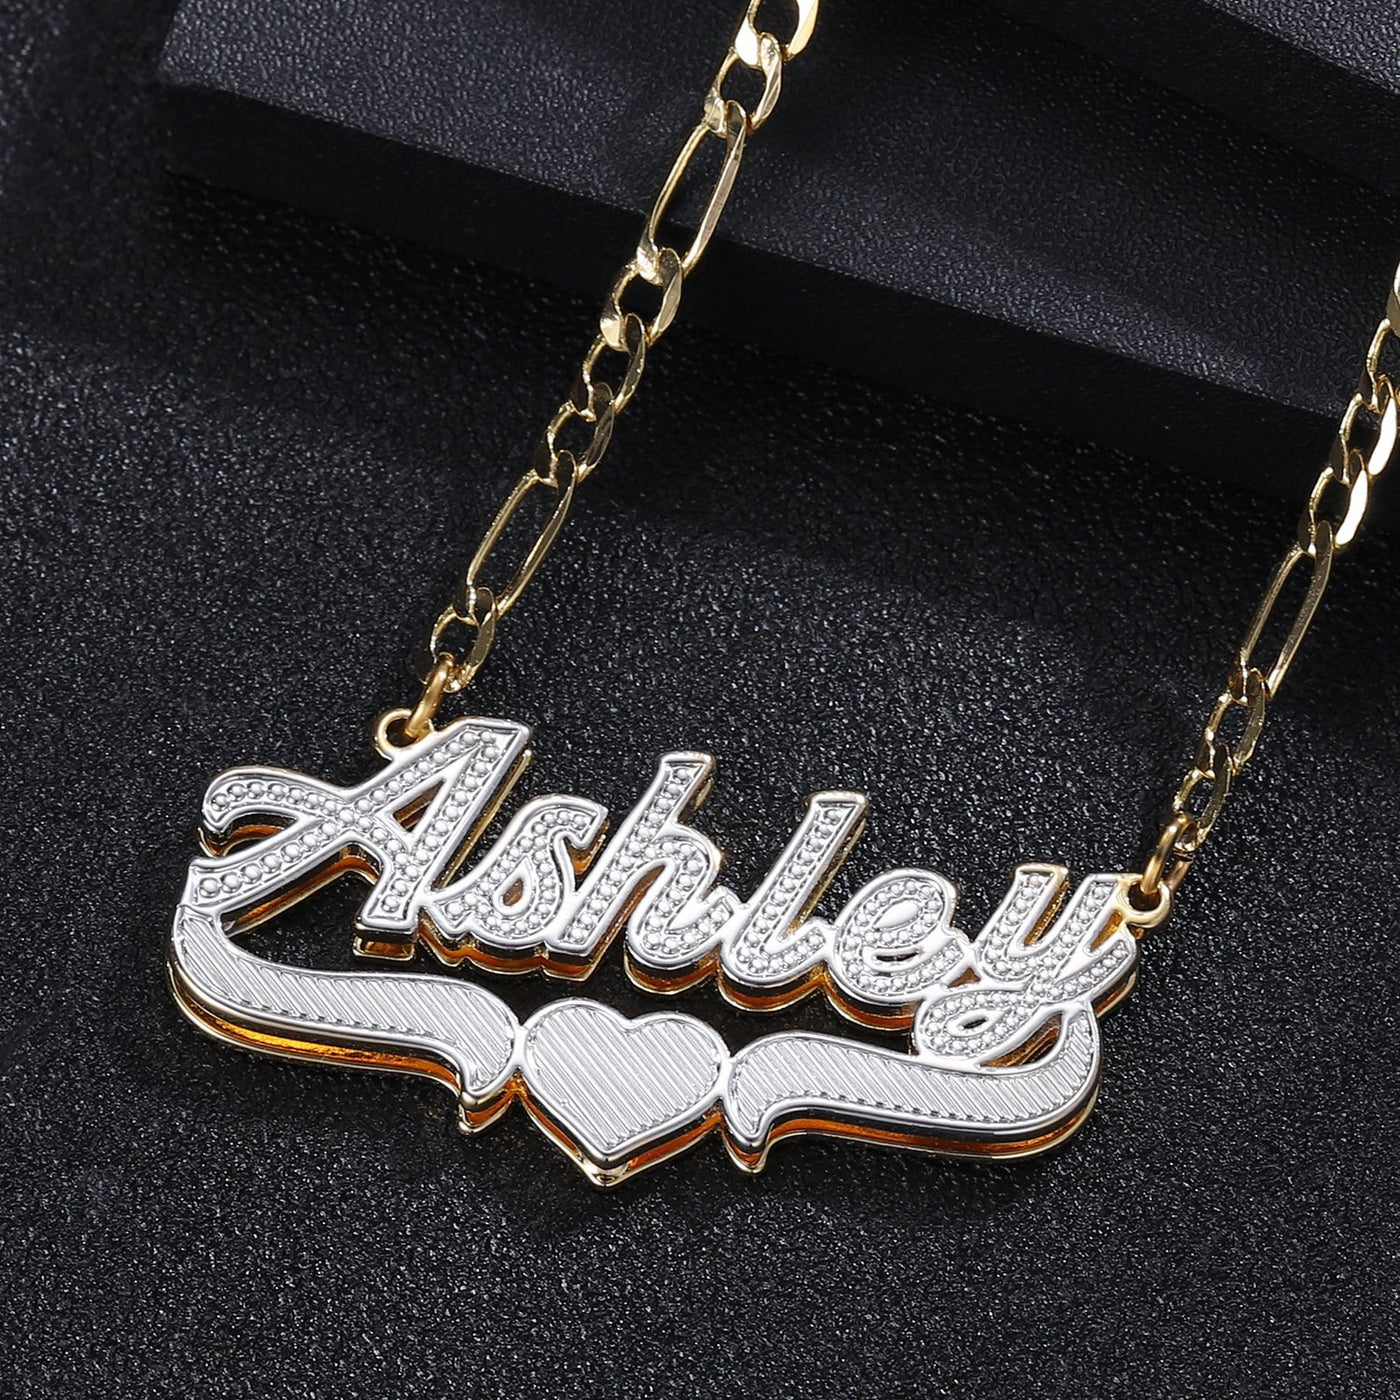 Legendary Lover - Sleek Chain Custom Necklace - HouseofLx18K White Gold